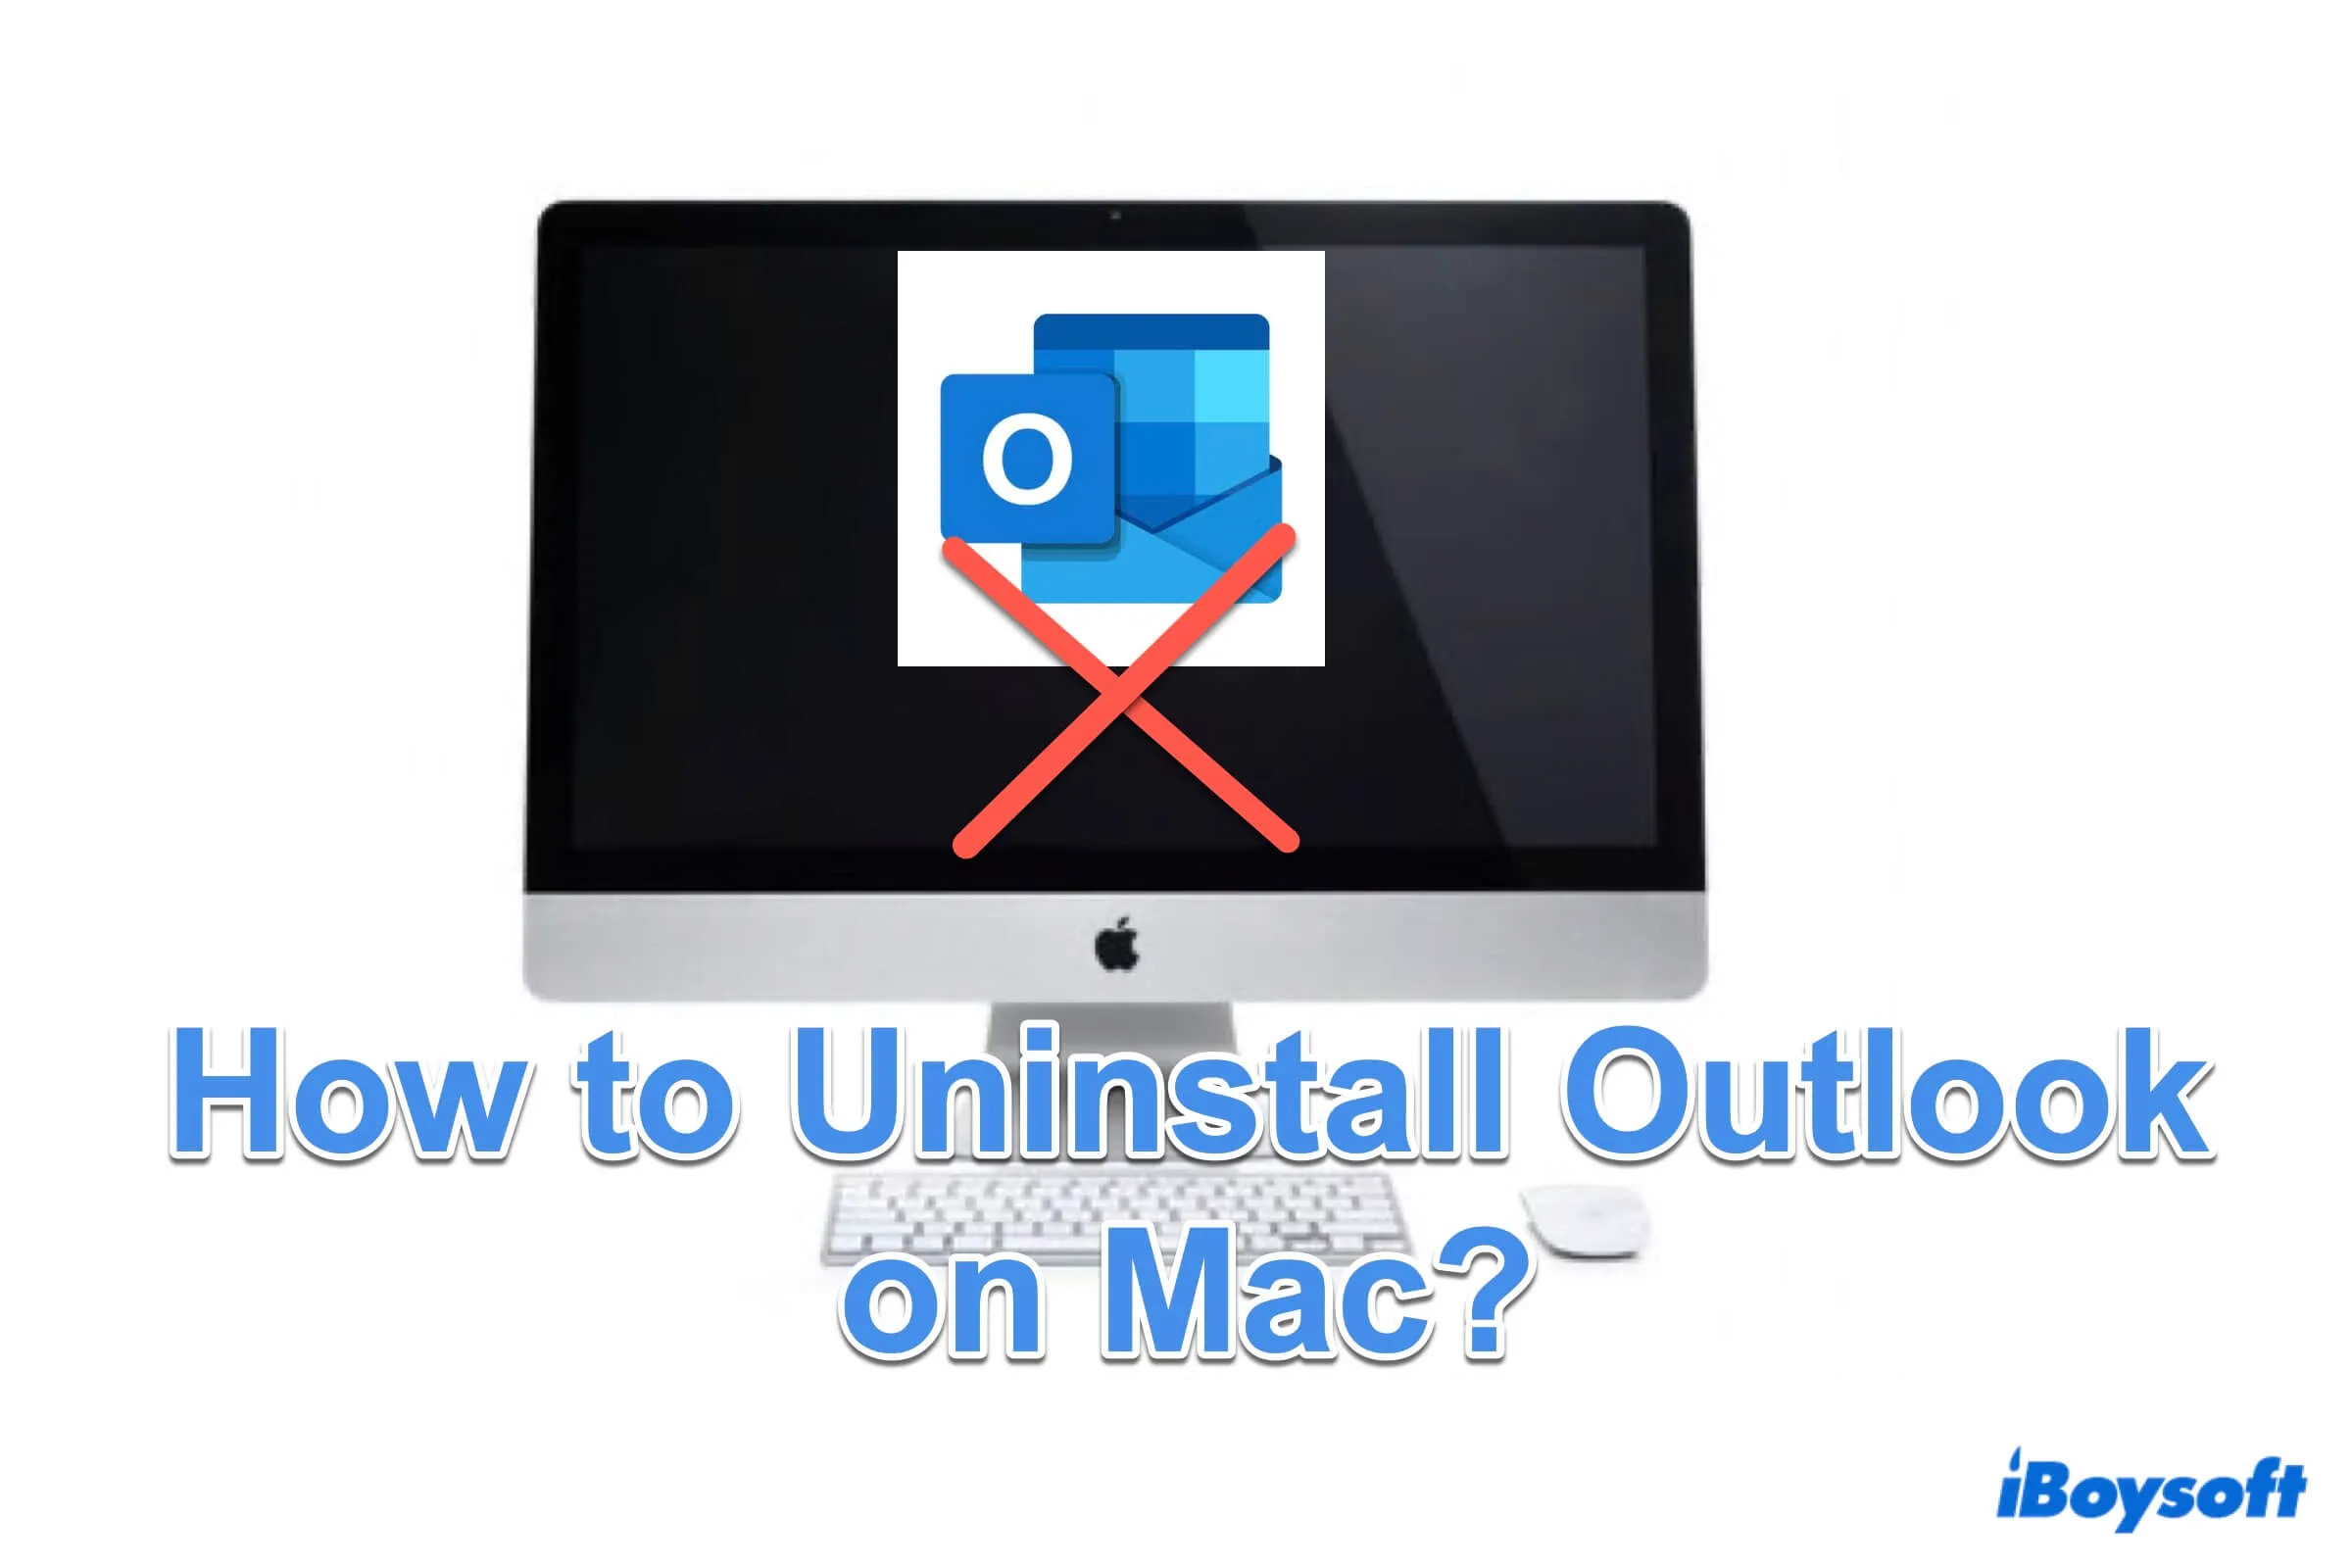 Resumen de Cómo Desinstalar Outlook en Mac